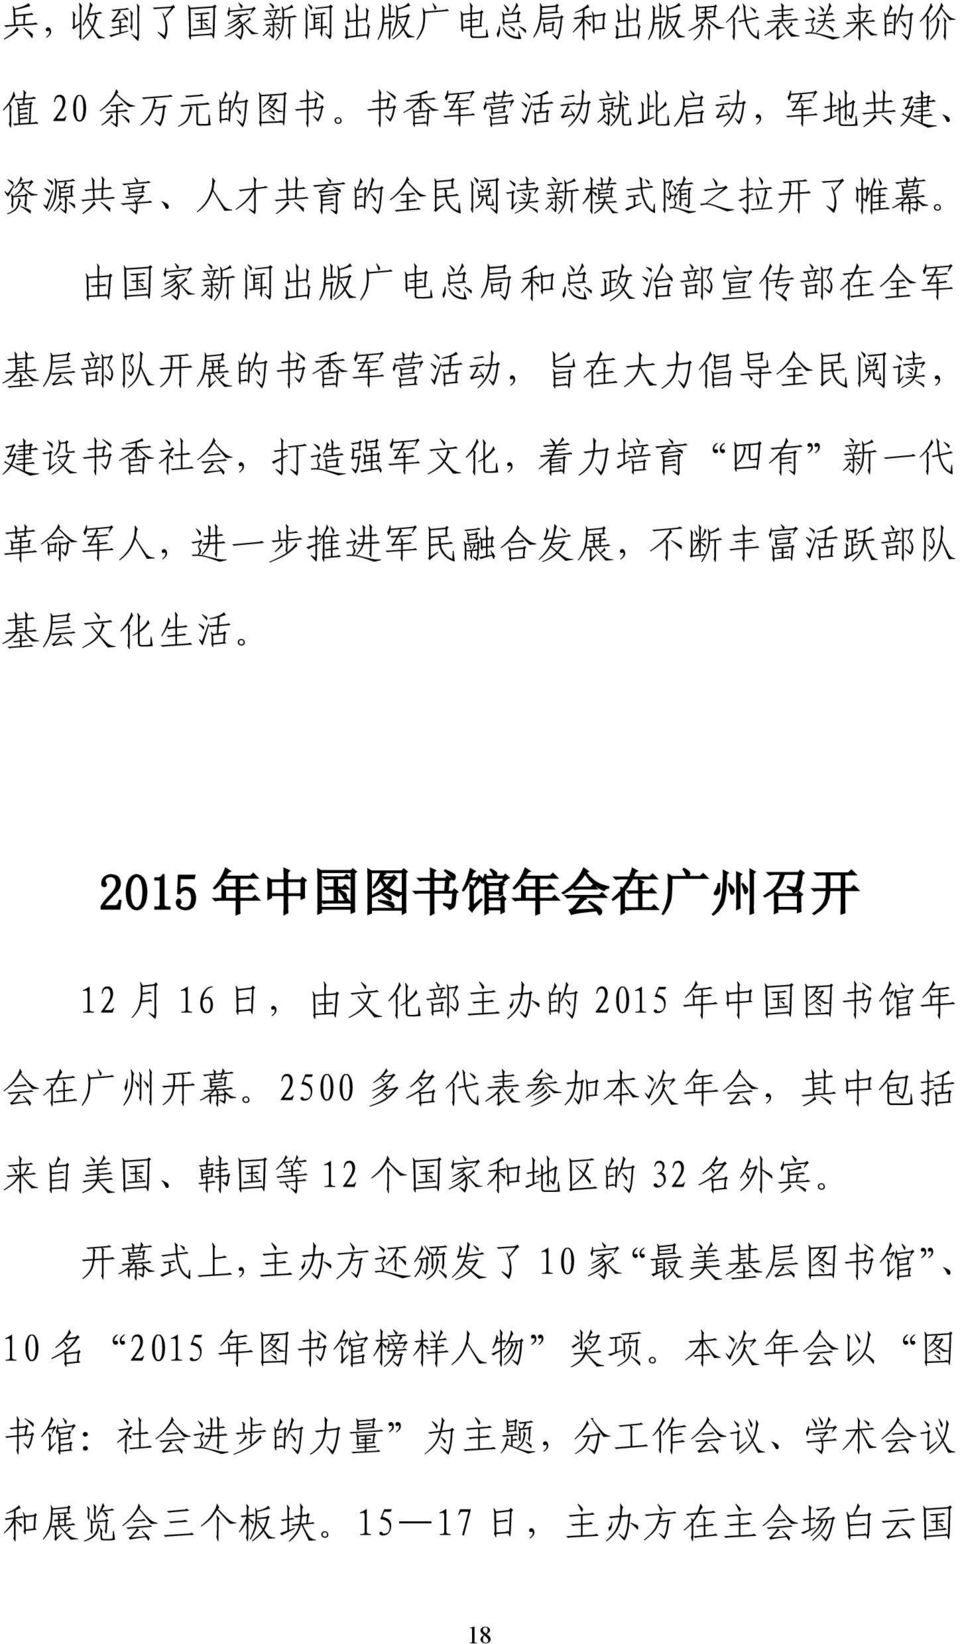 2015 年 中 国 图 书 馆 年 会 在 广 州 召 开 12 月 16 日, 由 文 化 部 主 办 的 2015 年 中 国 图 书 馆 年 会 在 广 州 开 幕 2500 多 名 代 表 参 加 本 次 年 会, 其 中 包 括 来 自 美 国 韩 国 等 12 个 国 家 和 地 区 的 32 名 外 宾 开 幕 式